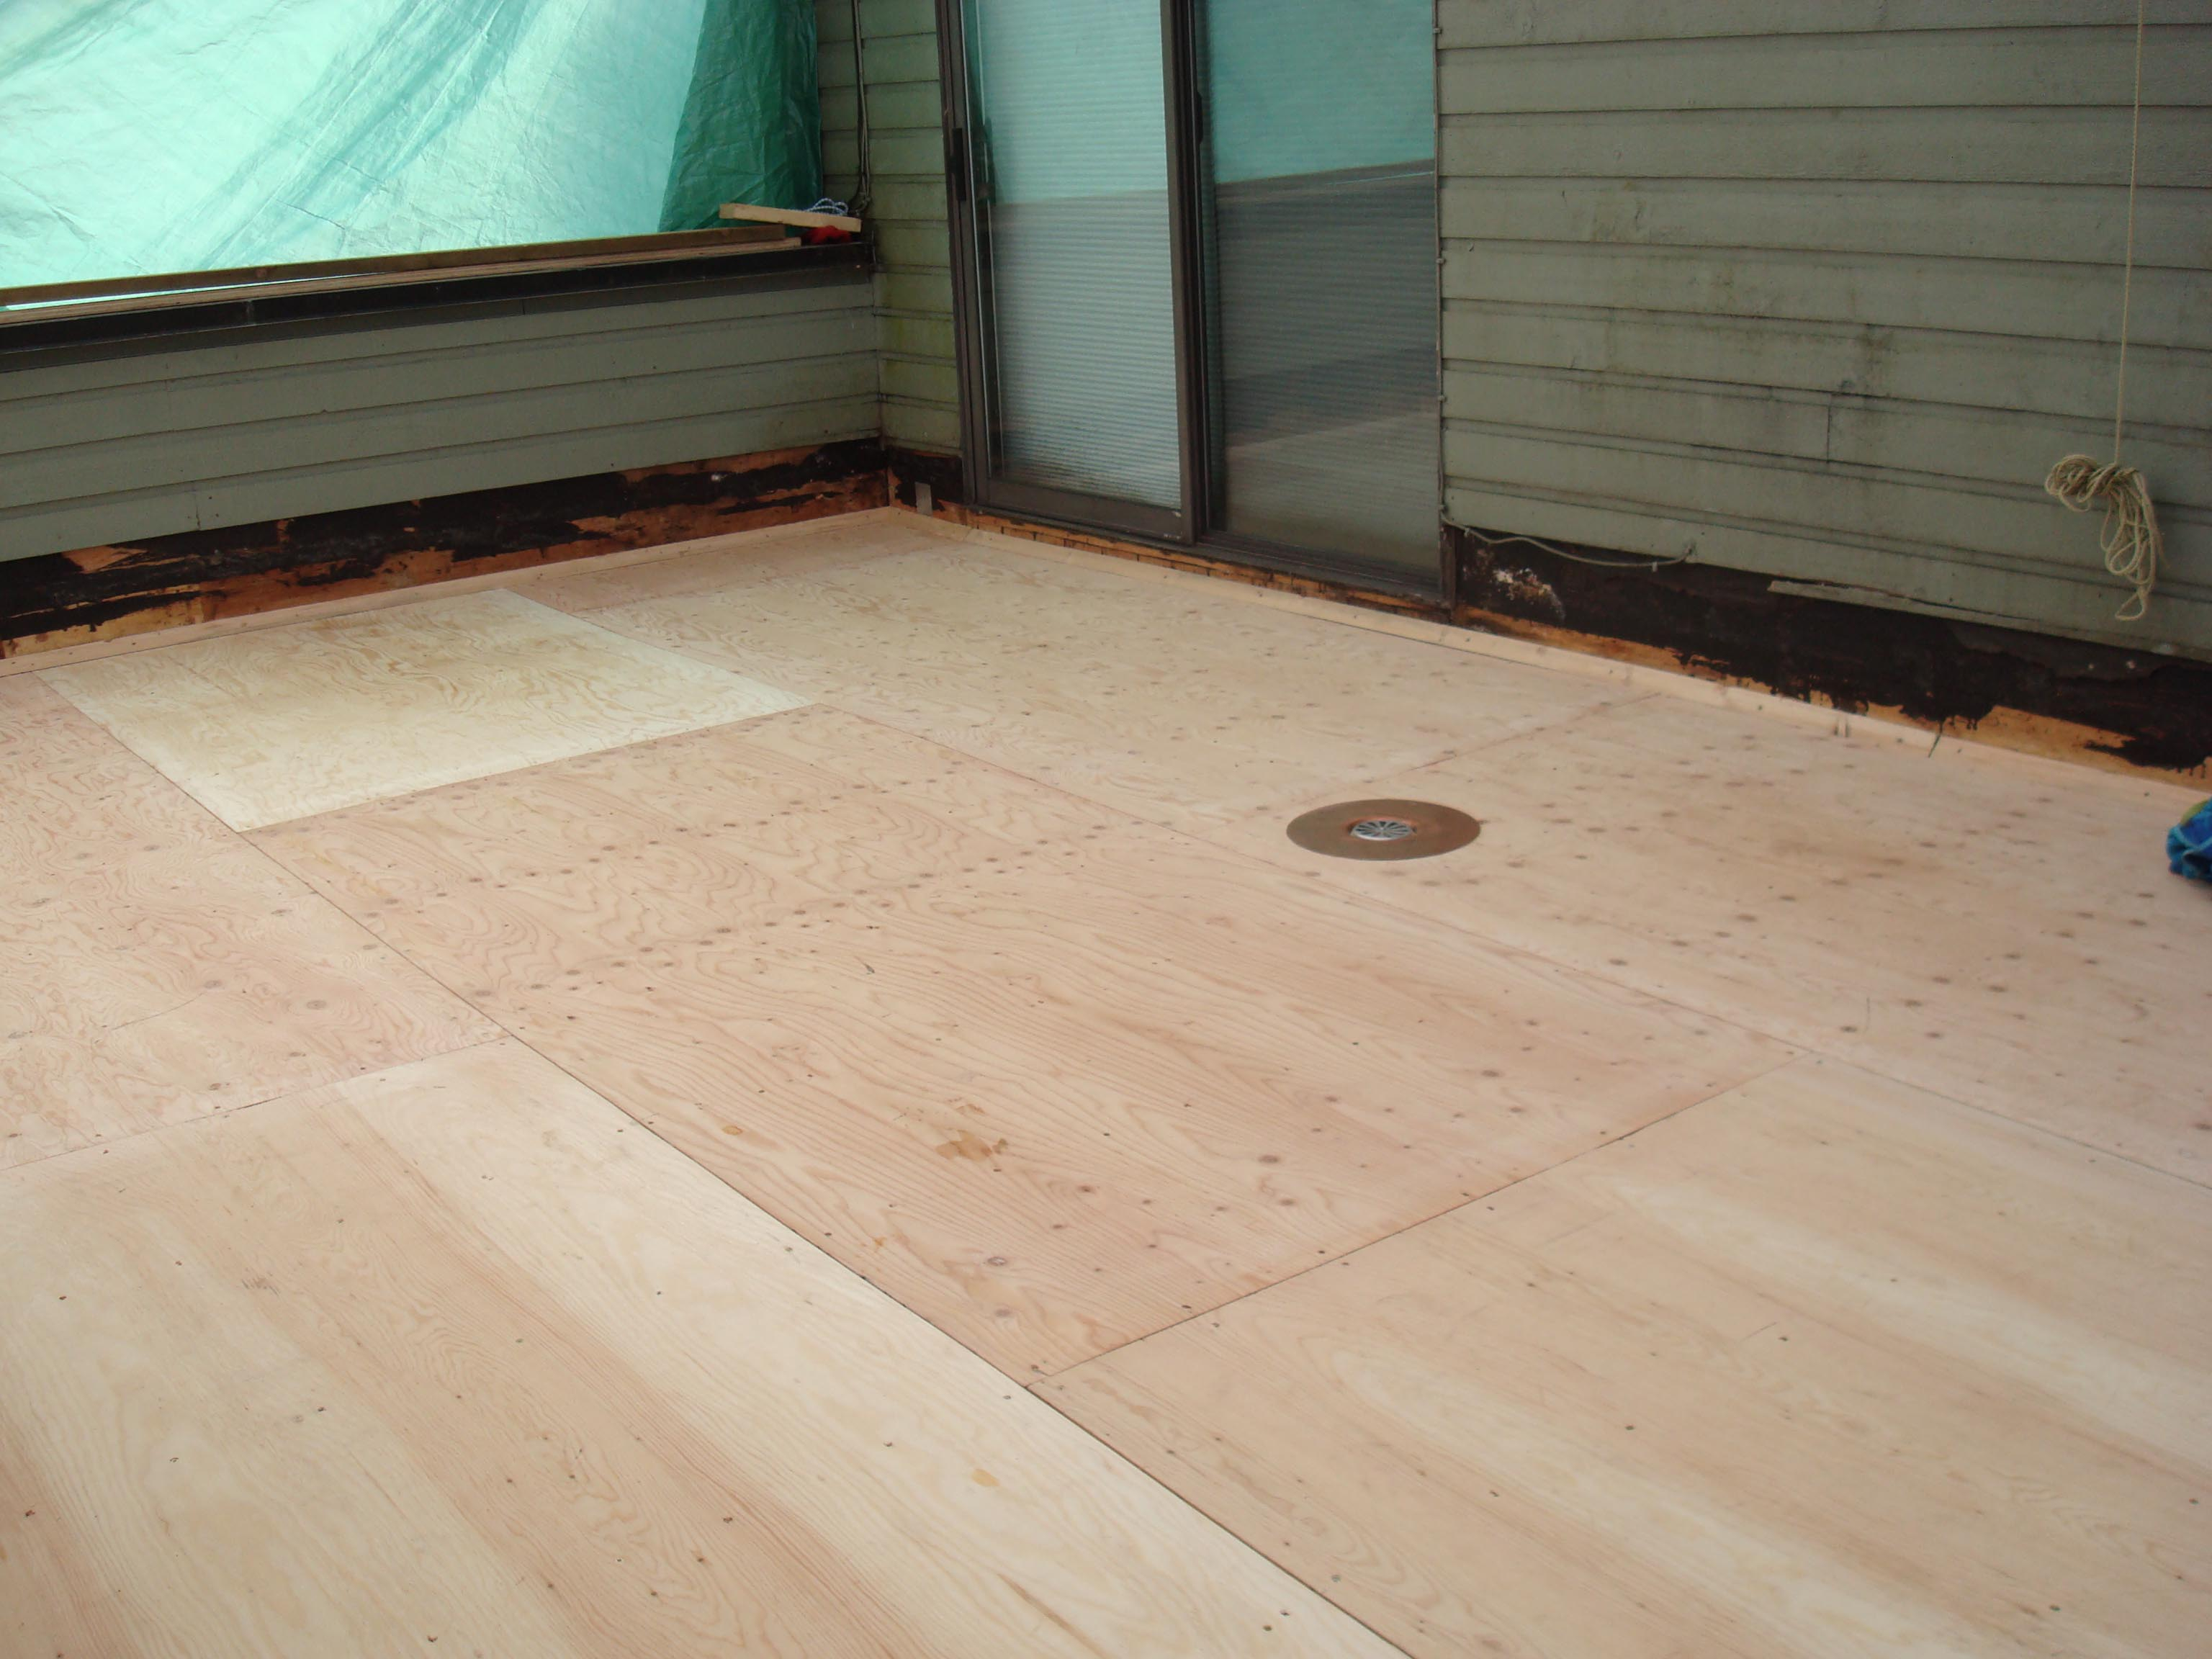 Waterproofing Plywood Decks Deck Coating Deck Repair regarding dimensions 3072 X 2304